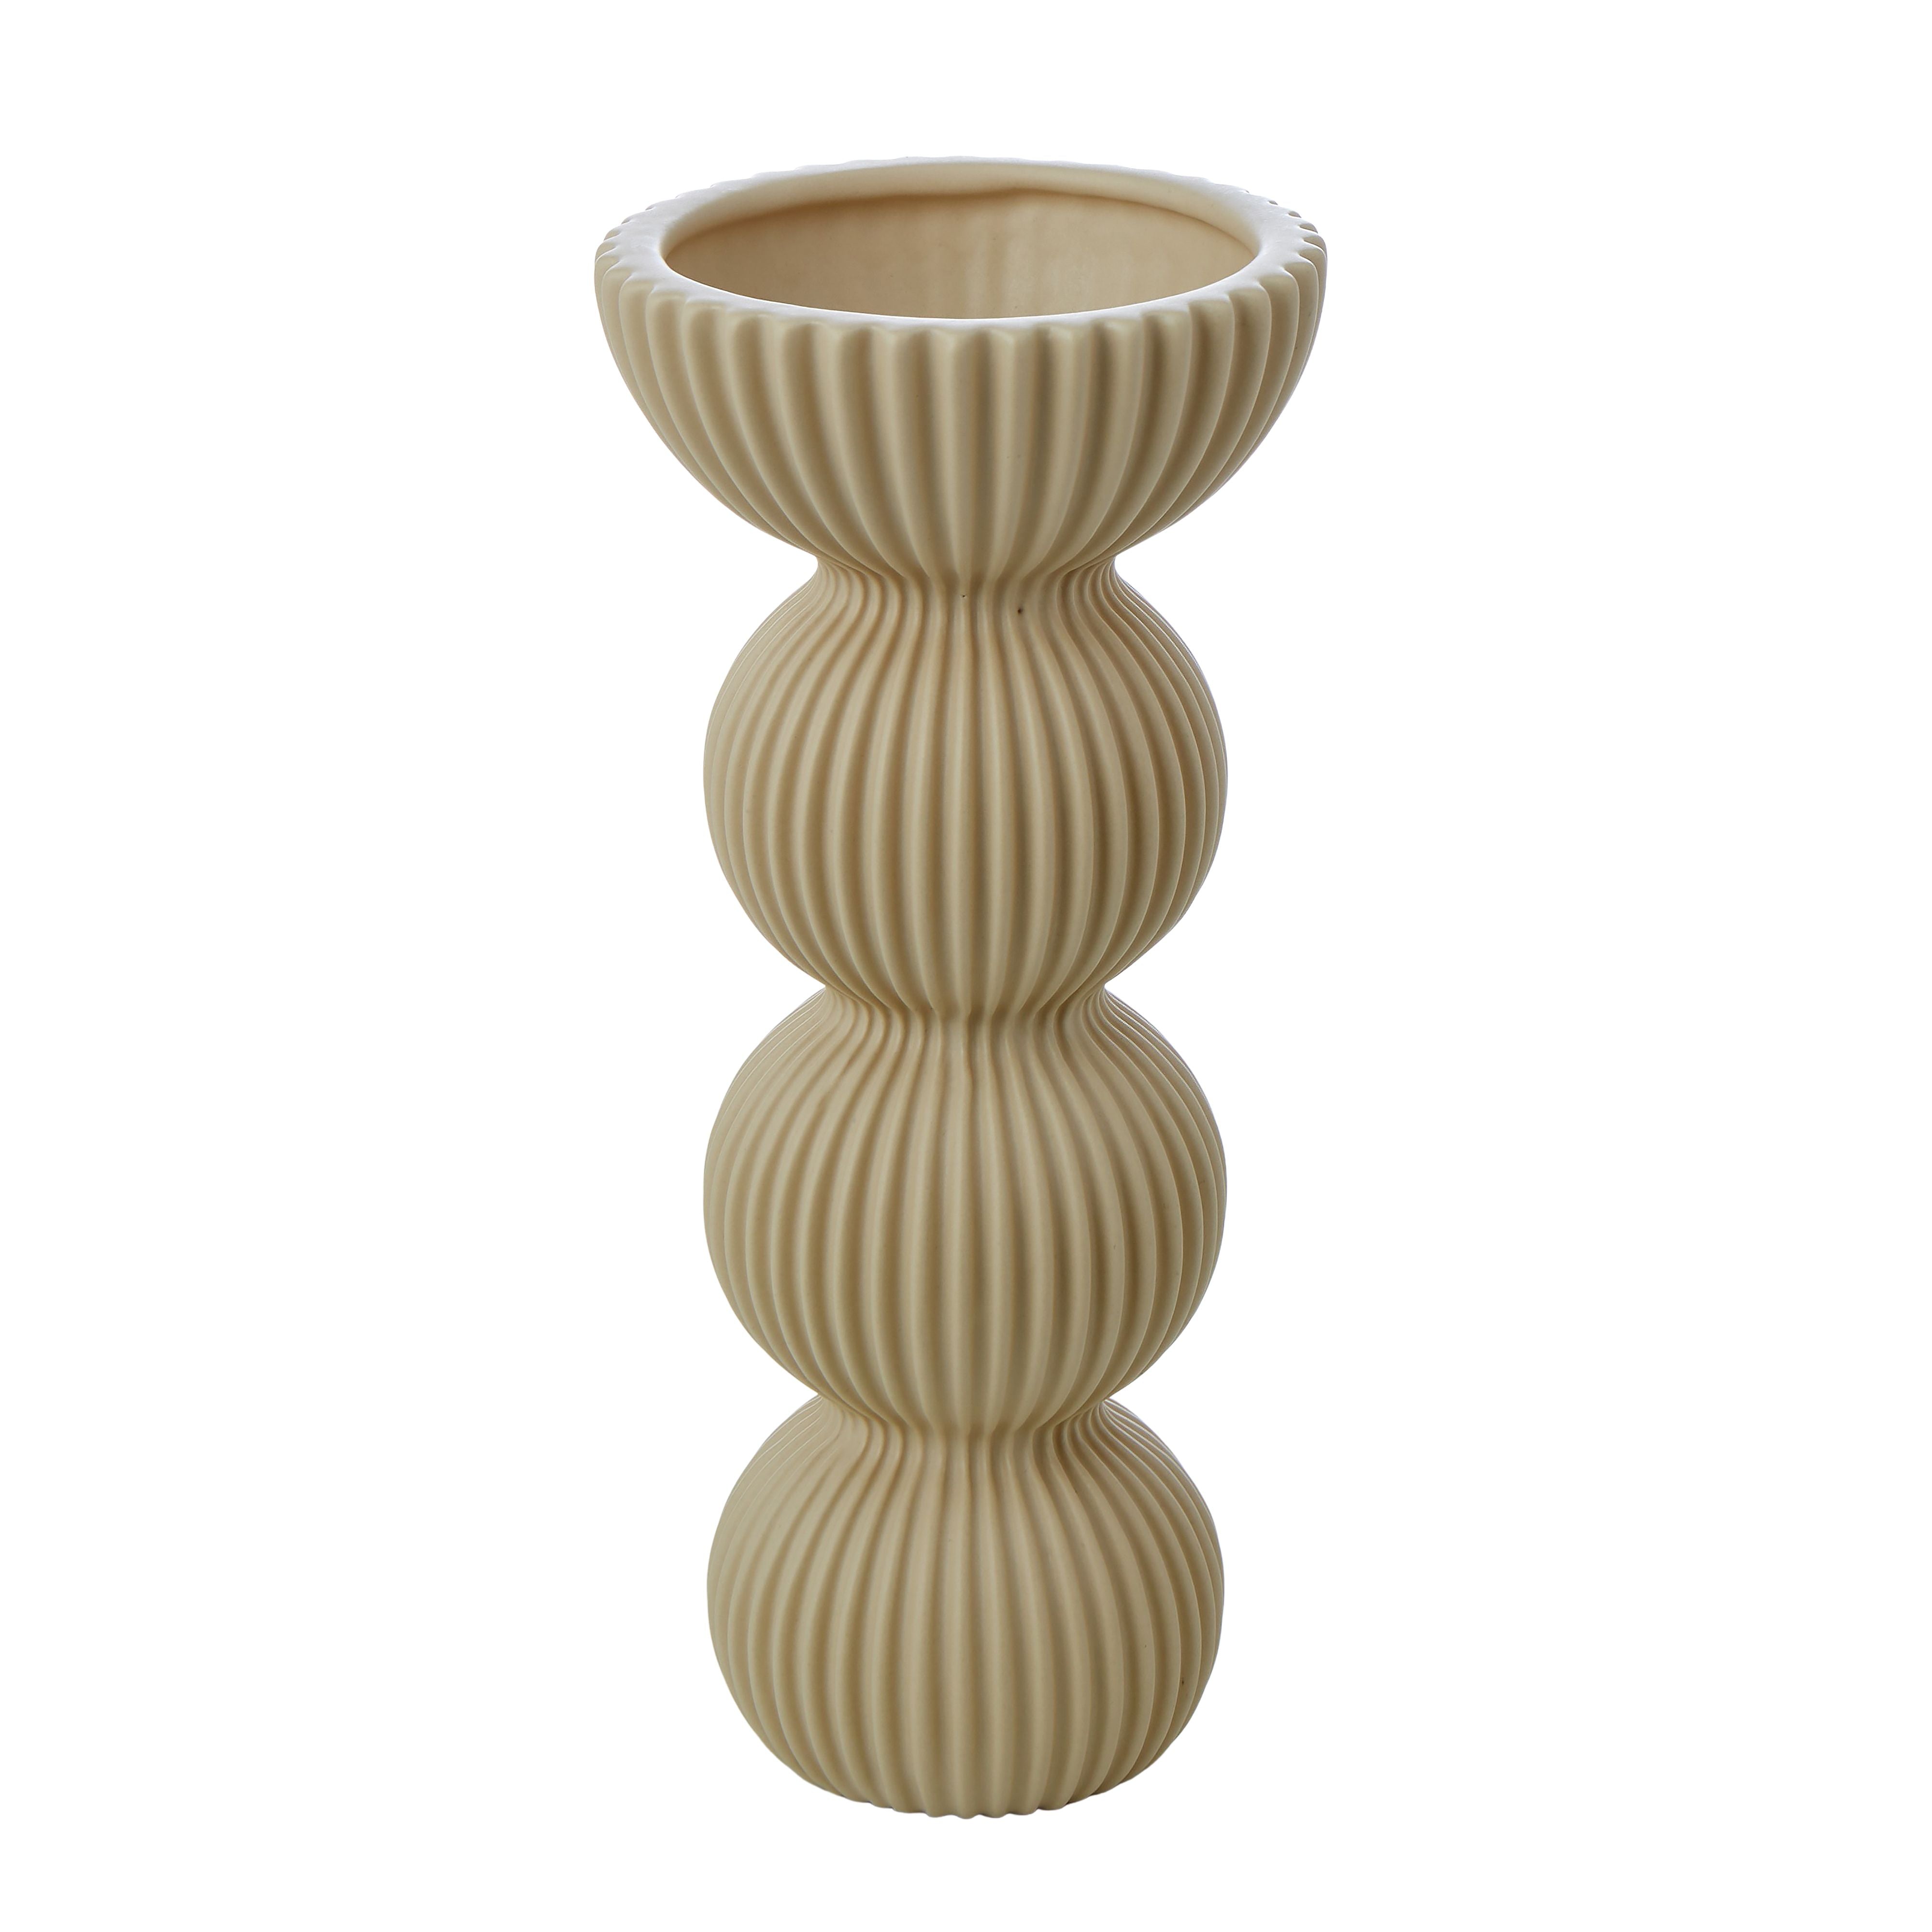 Decorative Ceramic Vessel 25.5cm - Antique White-Pots, Planters & Vases-Emporium-The Bay Room